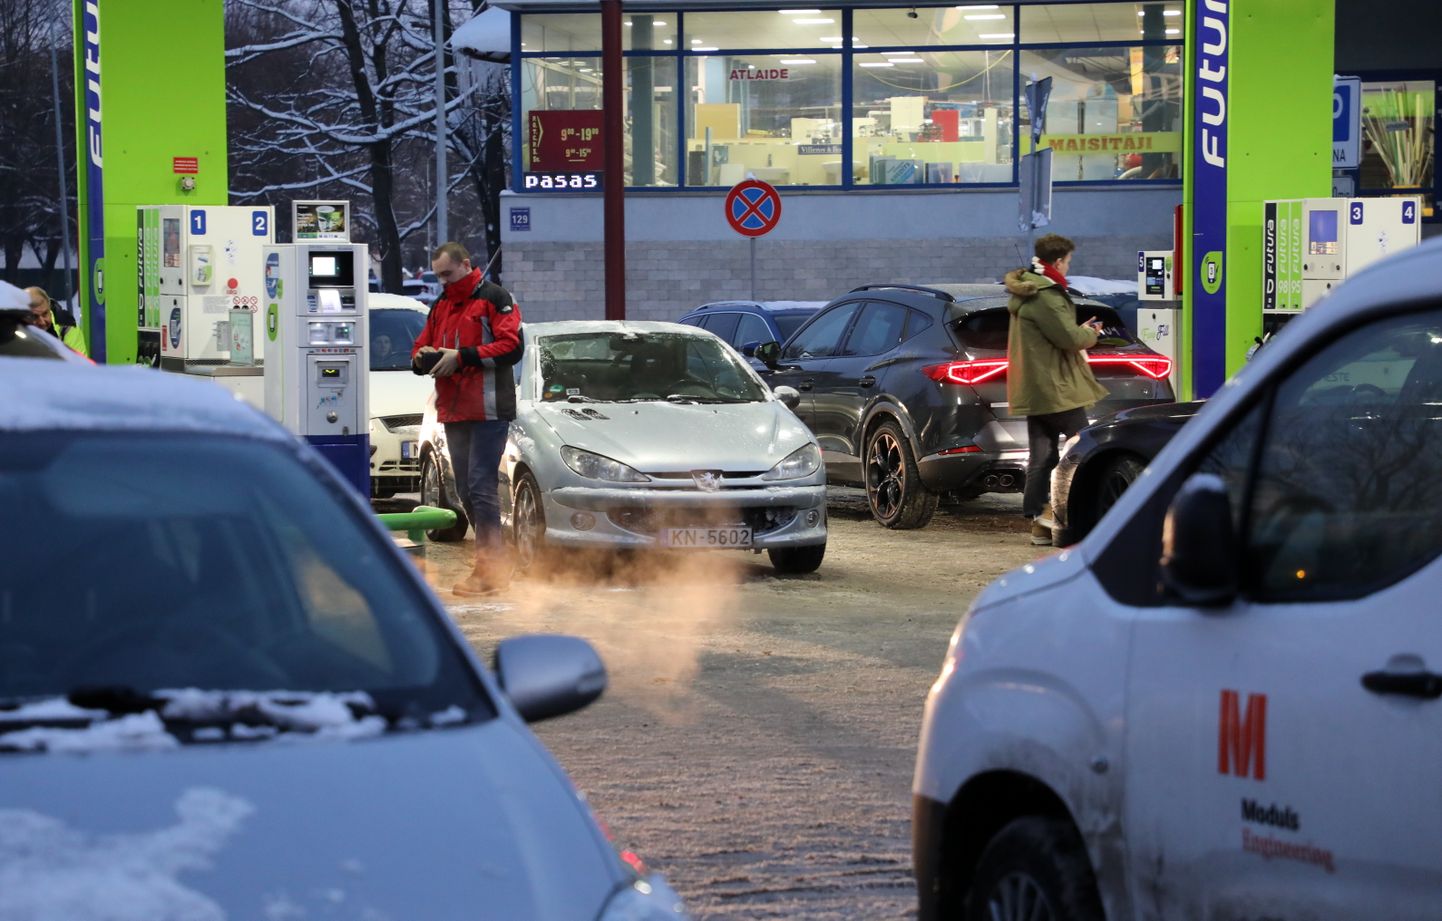 Automašīnas degvielas uzpildes stacijā "Neste", kur no plkst. 13 līdz 17 degvielai samazināta cena par 0,15 eiro litrā